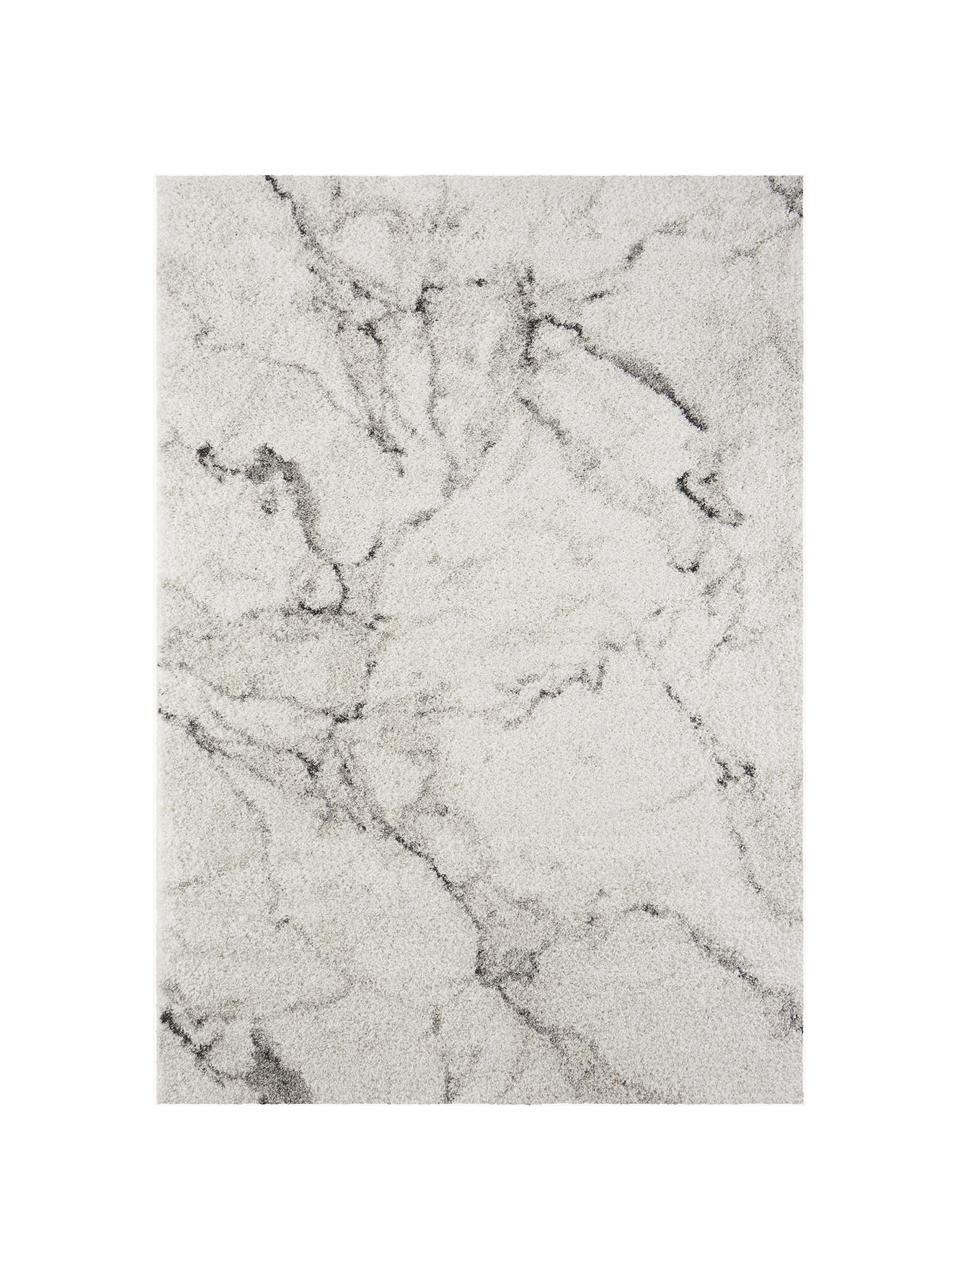 Flauschiger Hochflor-Teppich Mayrin mit marmoriertem Muster, Flor: 100% Polypropylen, Grautöne, B 120 x L 170 cm (Grösse S)